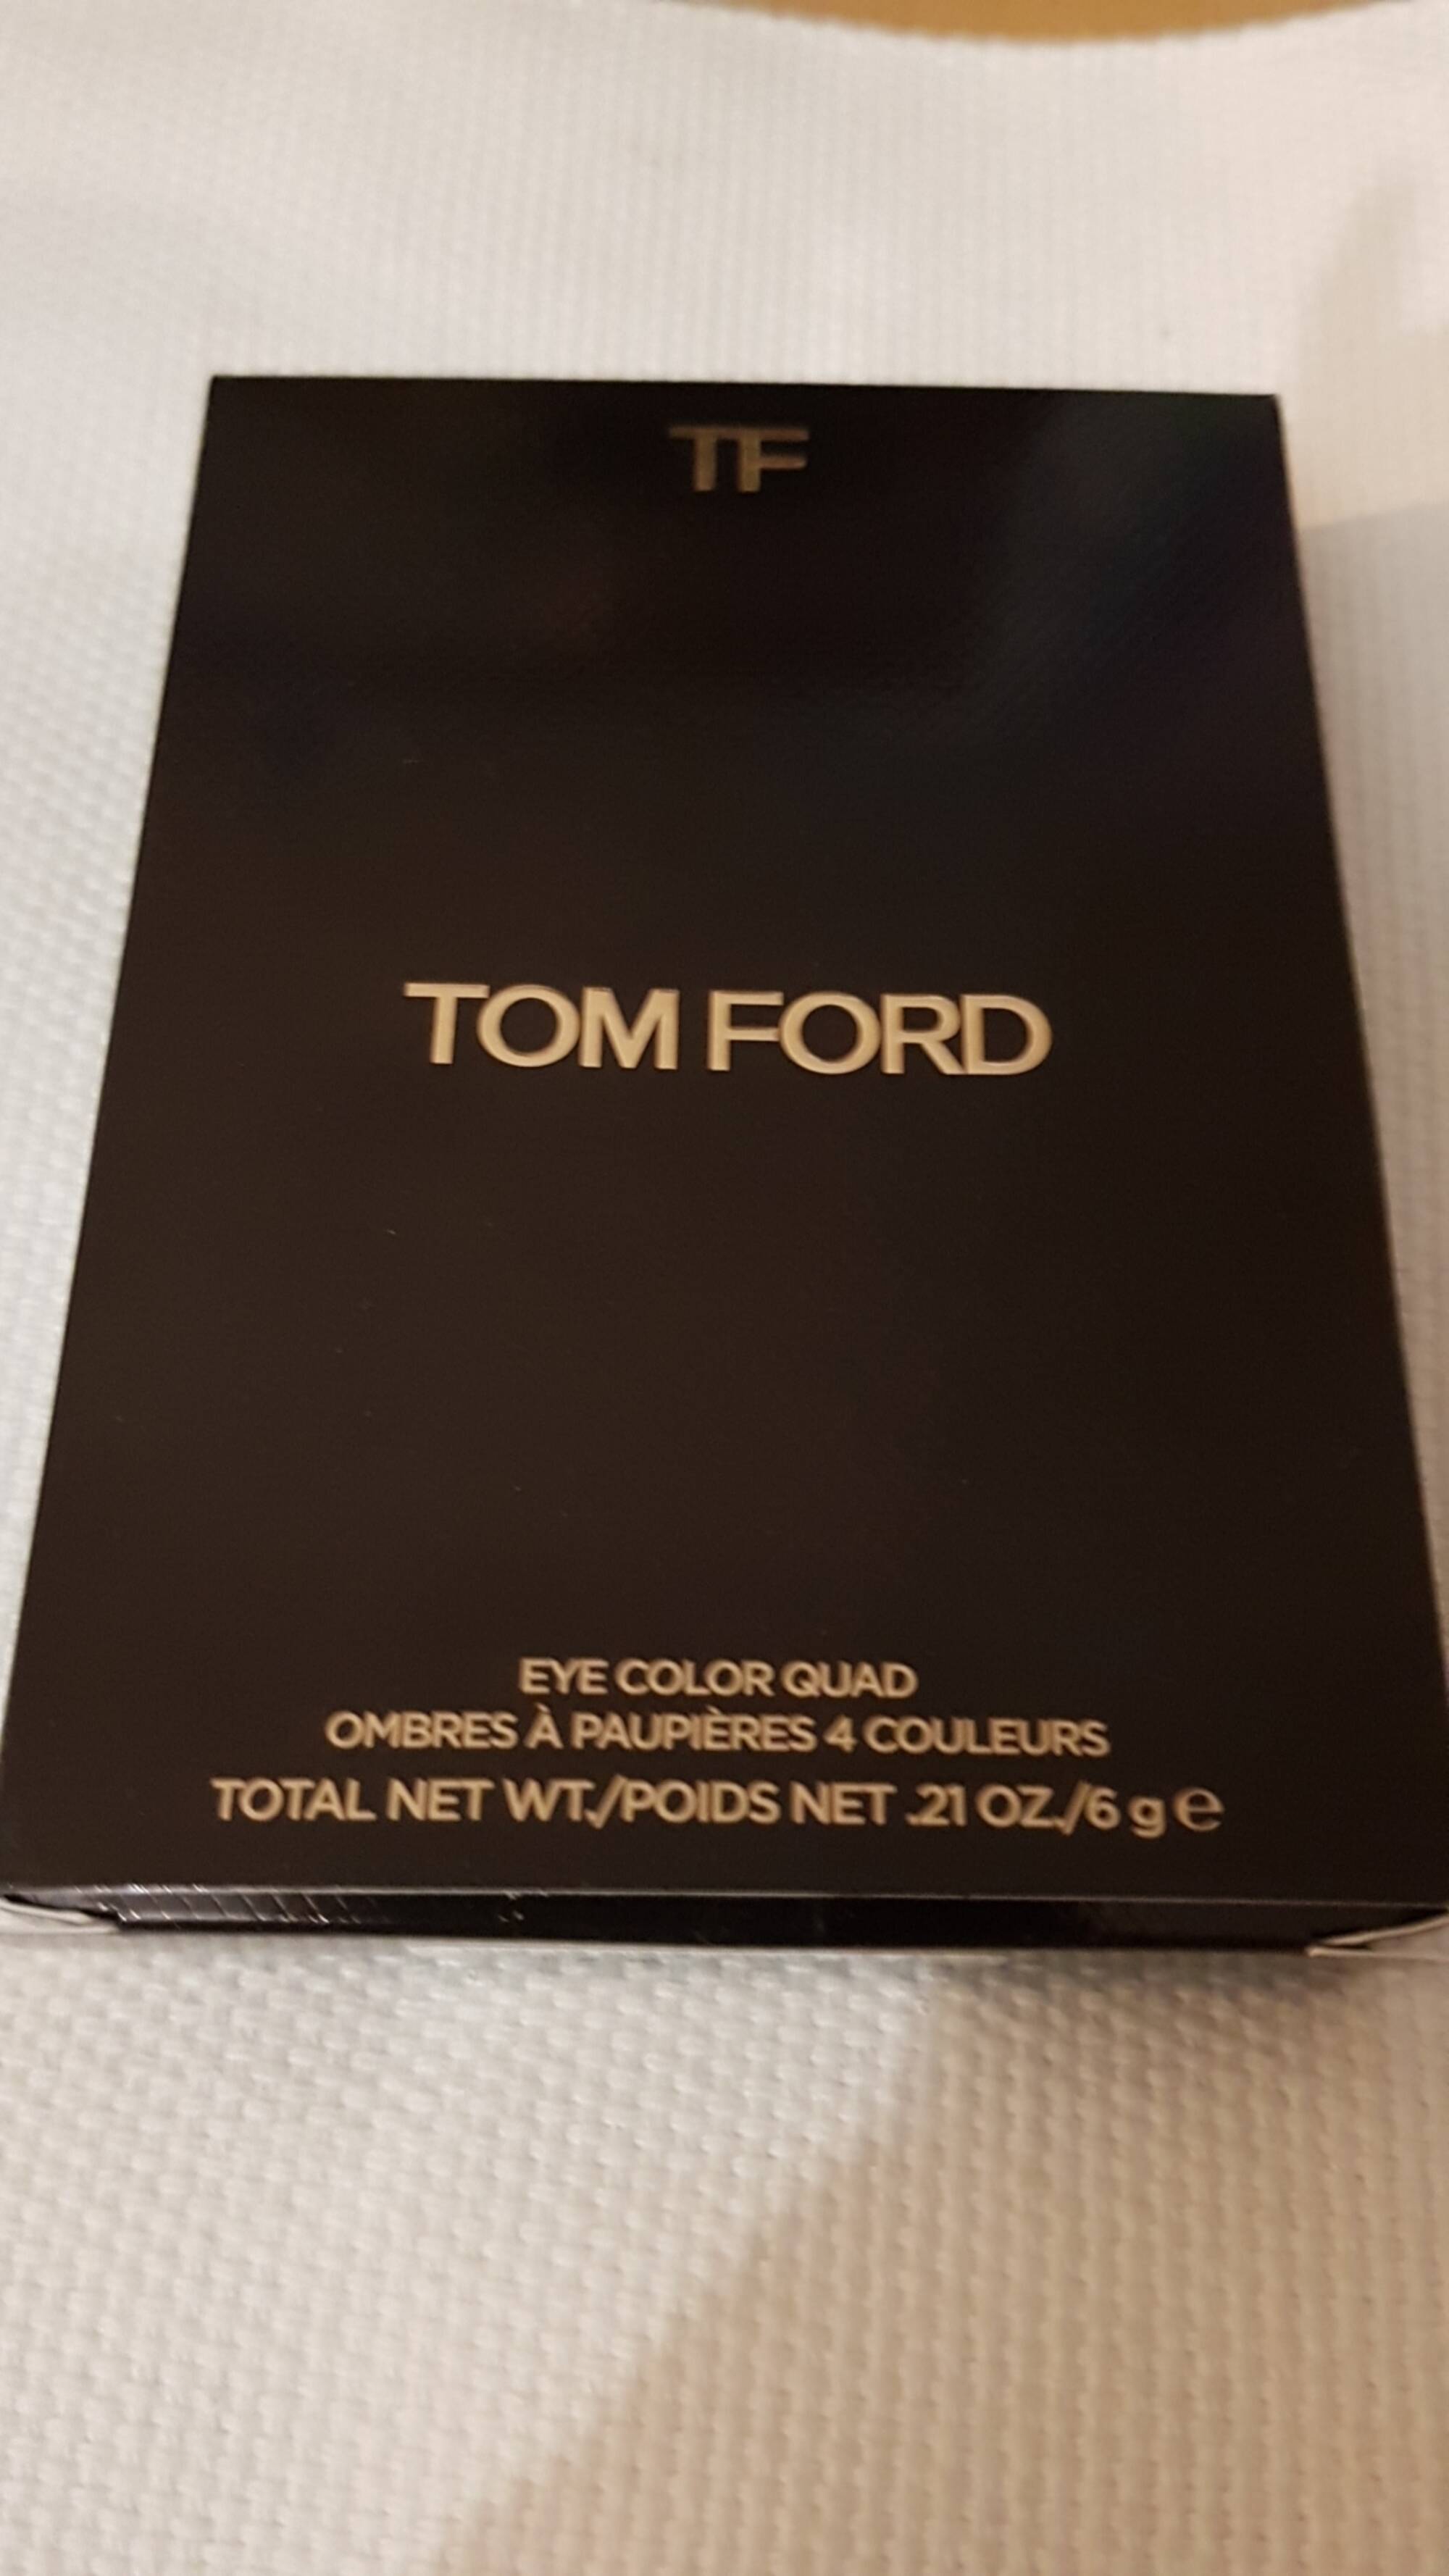 TOM FORD - Ombres à paupières 4 couleurs